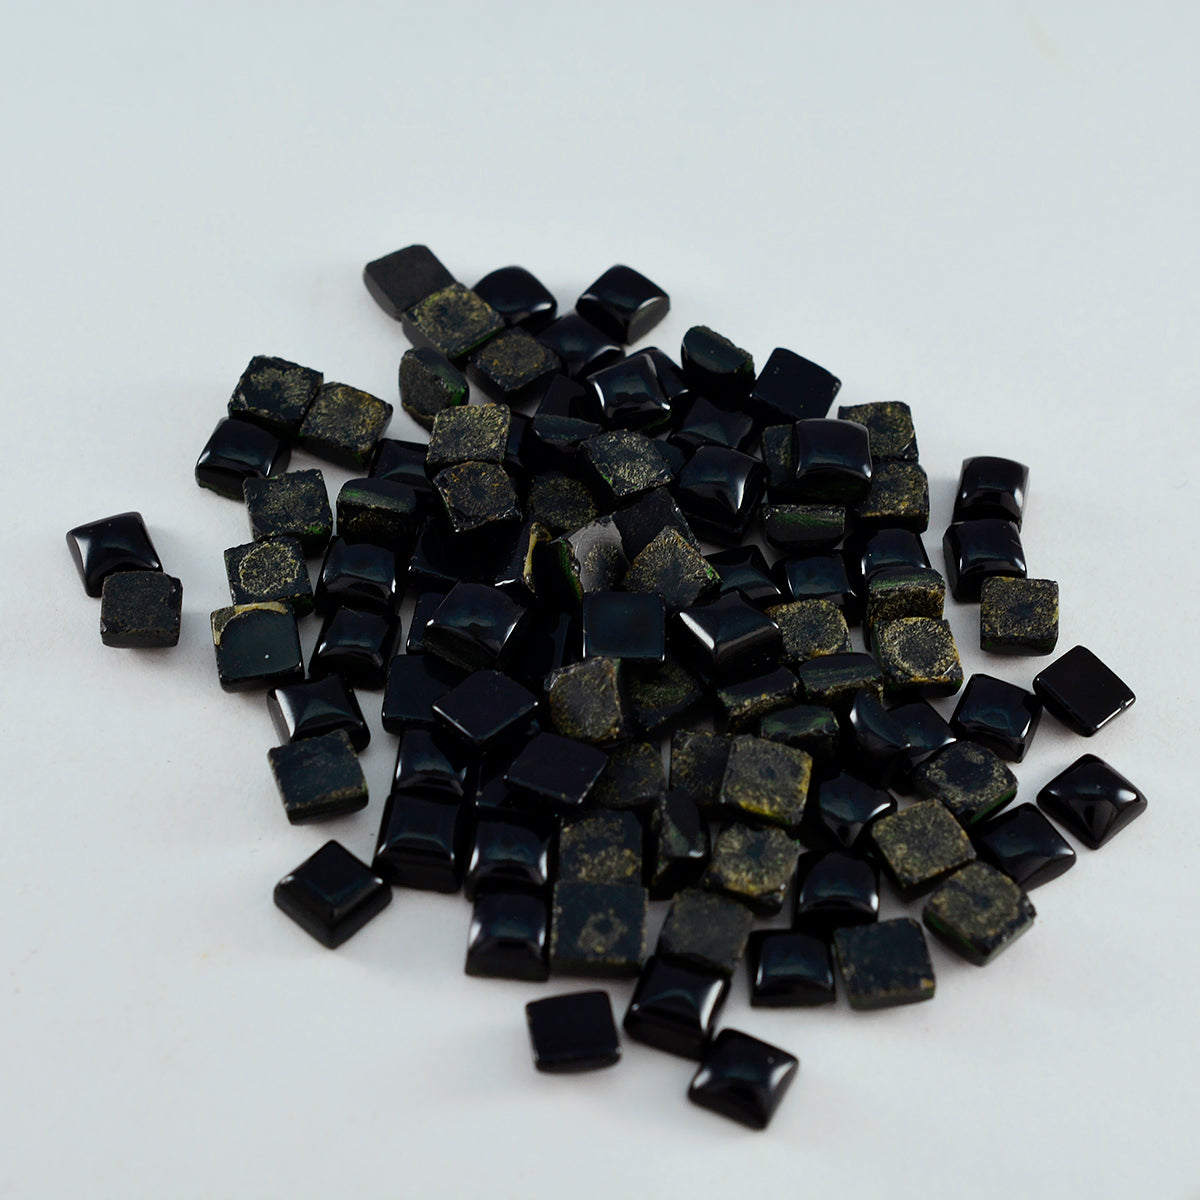 Riyogems 1PC zwarte onyx cabochon 4x4 mm vierkante vorm mooie kwaliteitsedelstenen